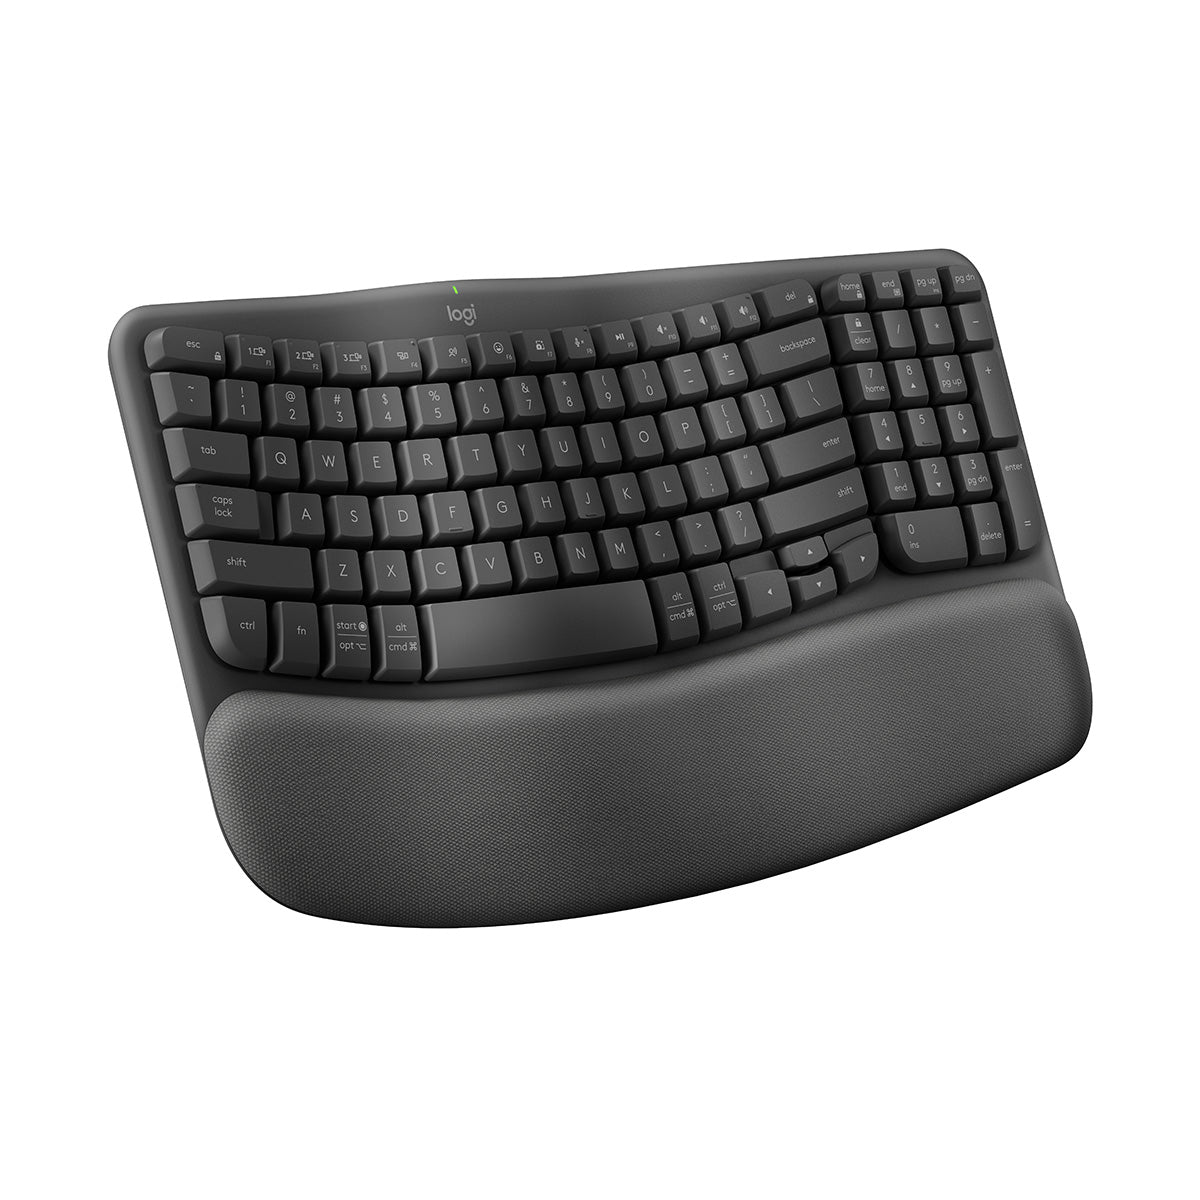 WAVE KEYS Ergonomic Wireless Keyboard